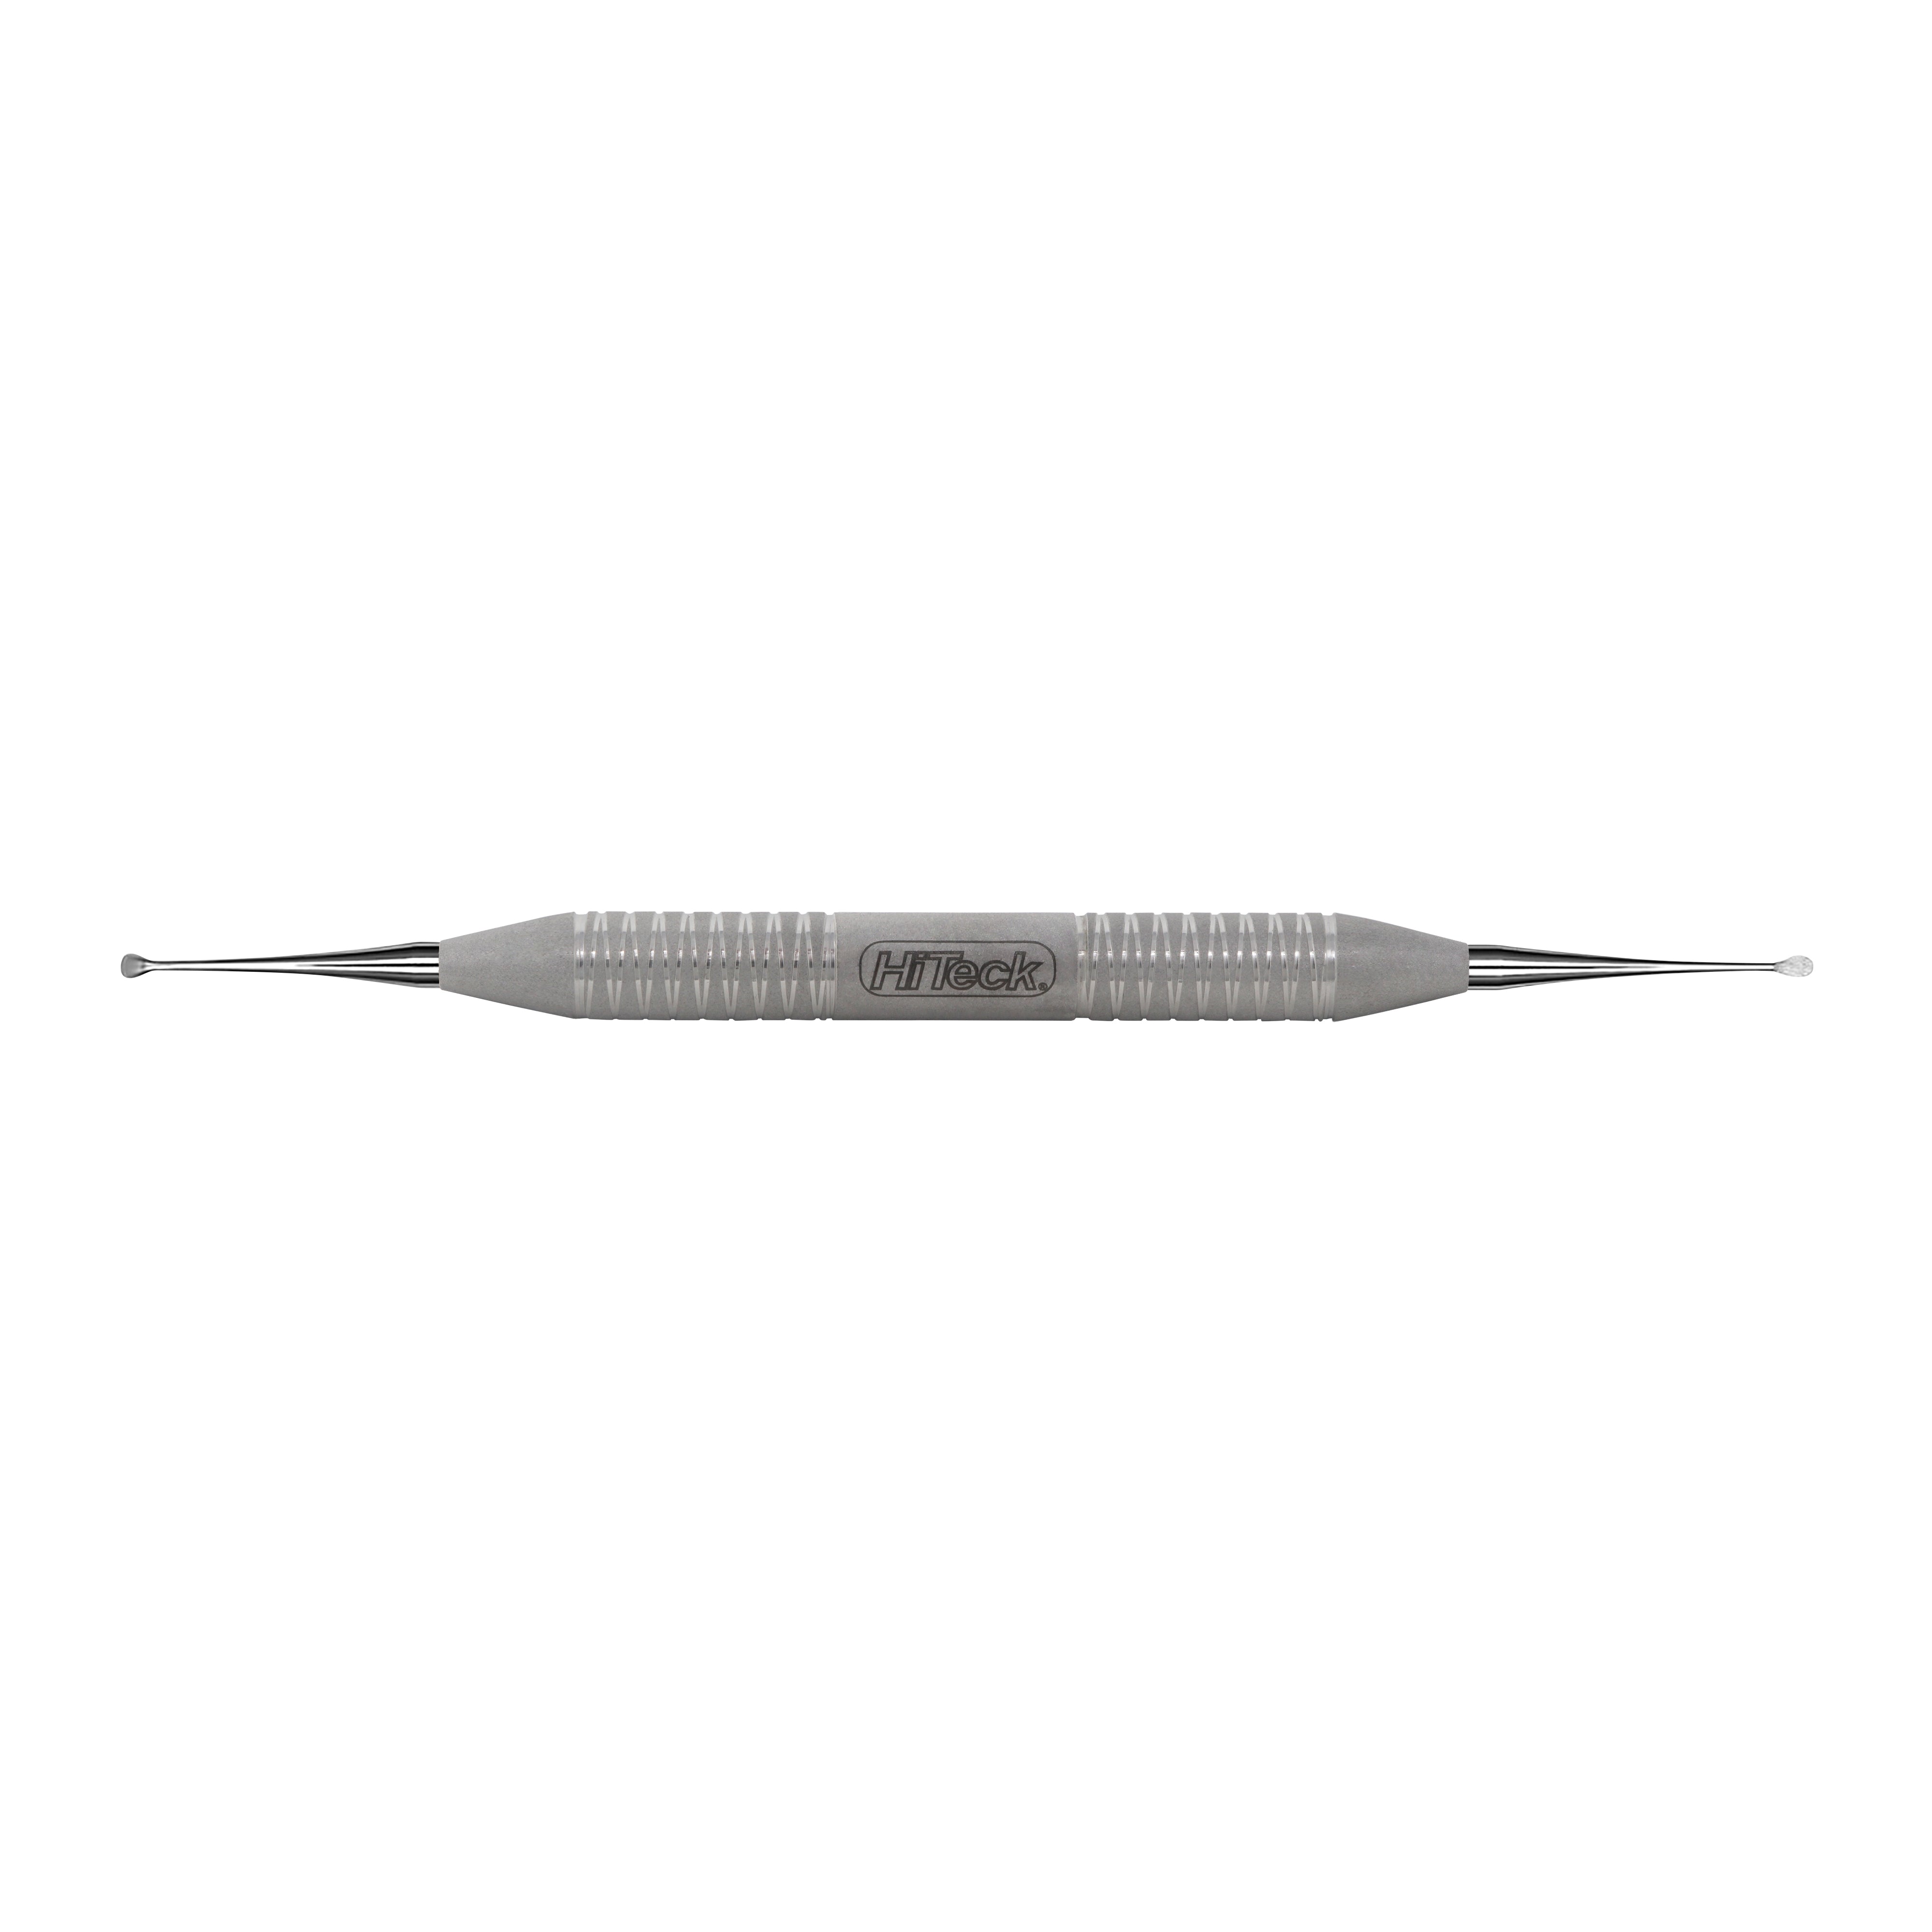 9 Miller Spoon Shape Surgical Curette, 2.8/3.4MM - HiTeck Medical Instruments